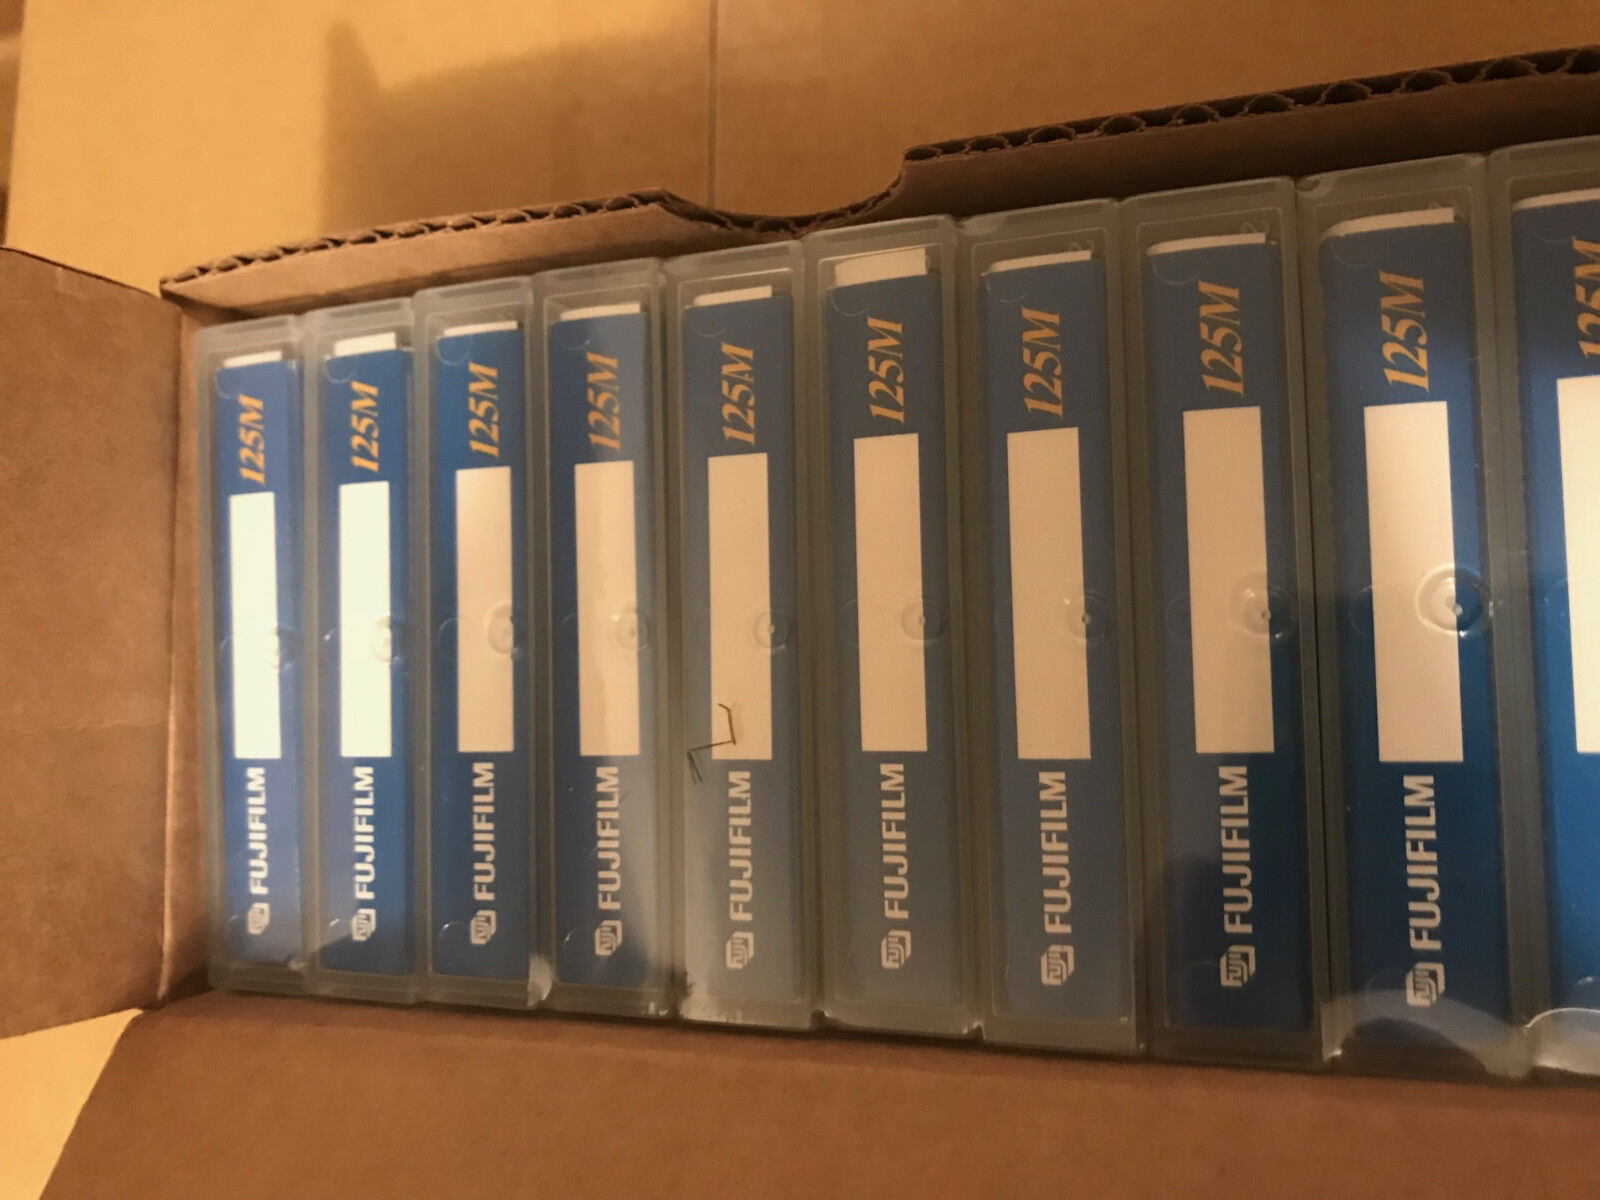 26047300 Lot of 10 New FujiFilm DDS-3 DAT 125M 4mm 12/24GB tape Data Cartridges